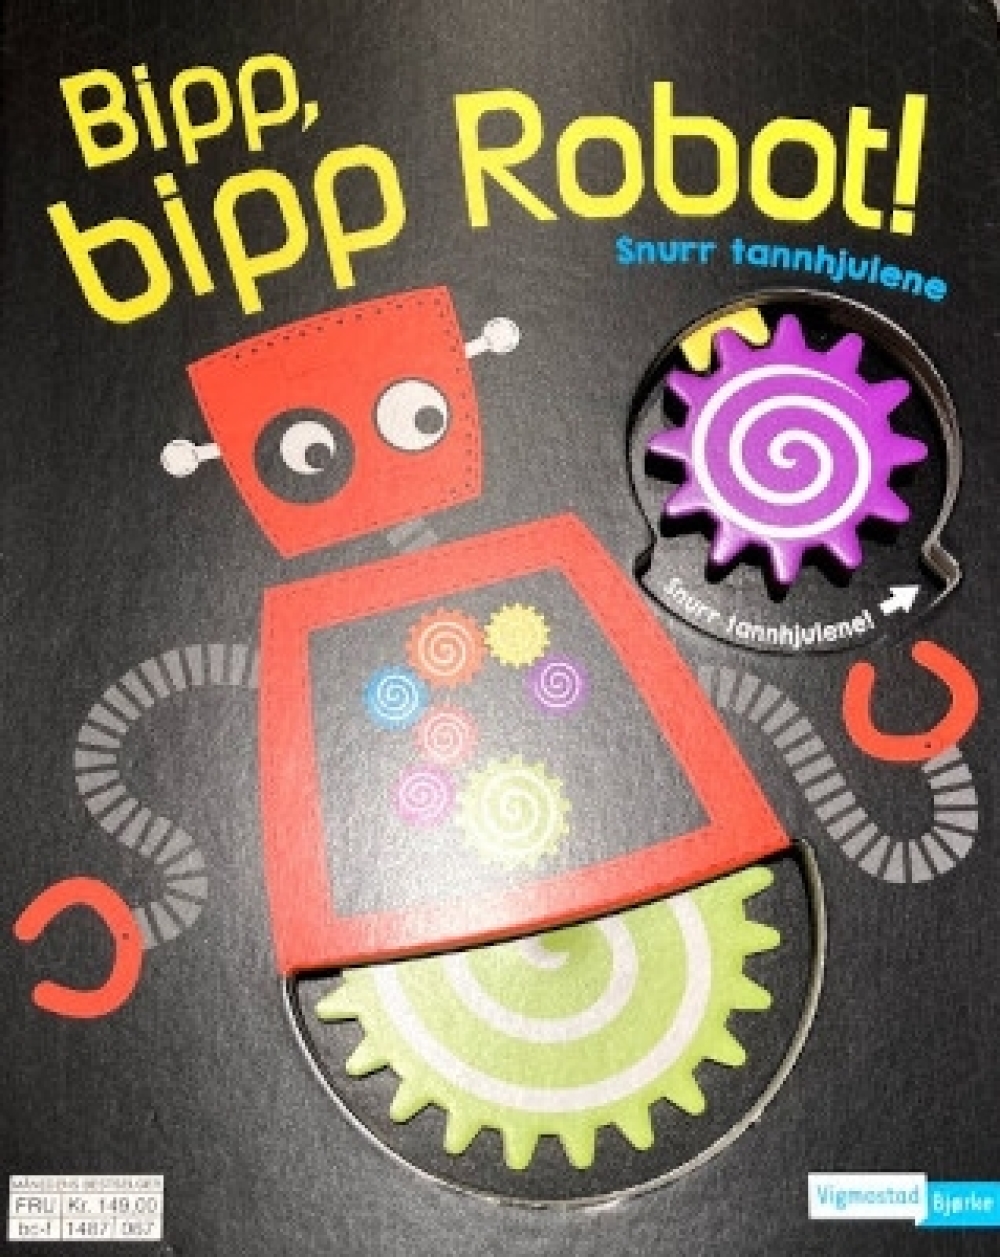 Bipp, bipp Robot!